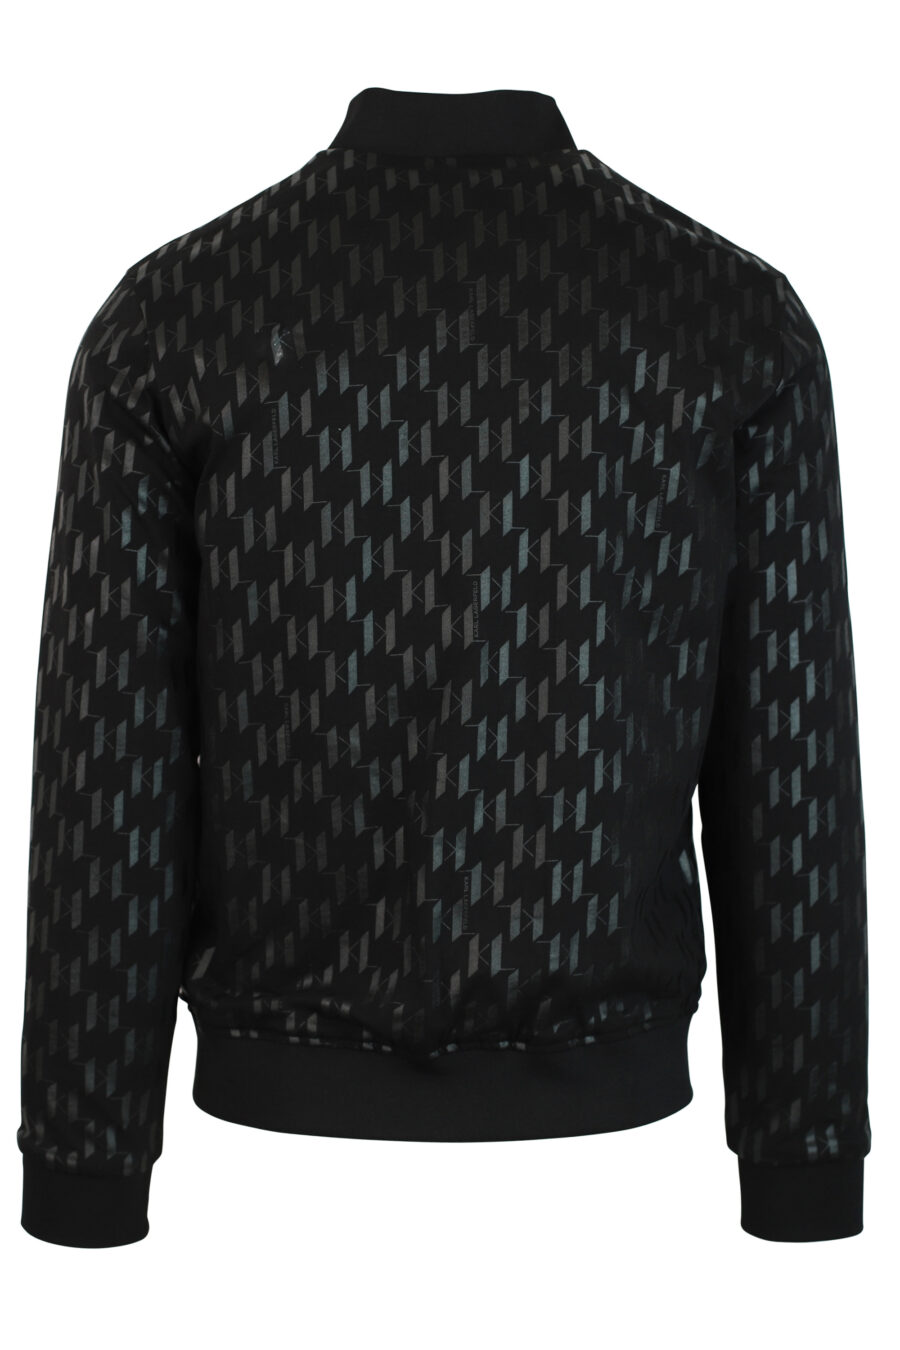 Black reversible bomber jacket with sleeve pocket - 4062226199117 6